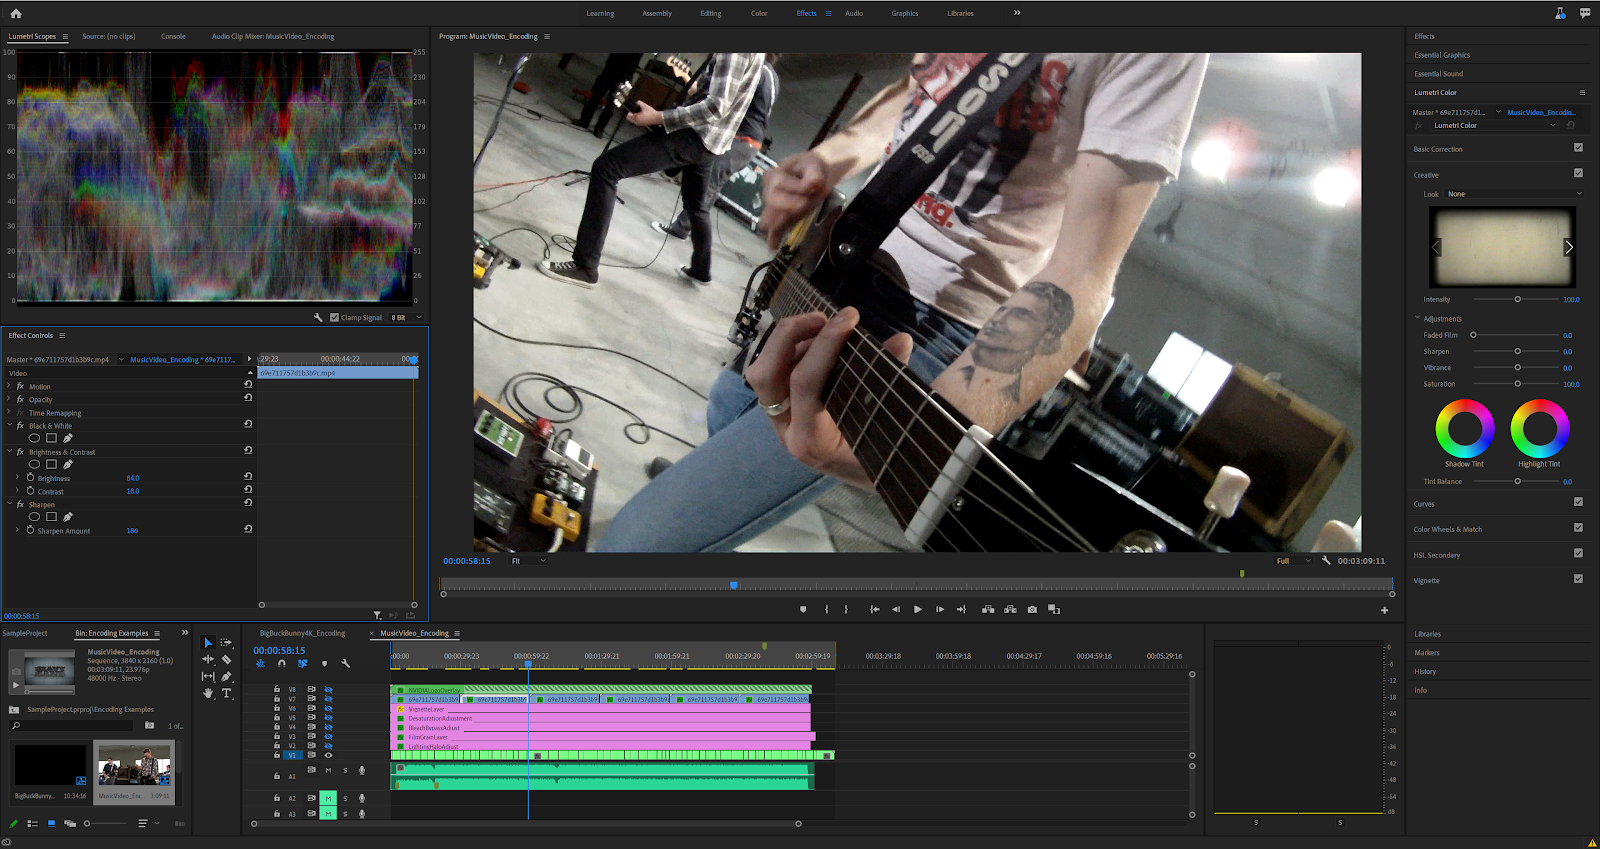 Screenshot of a music video edit in Adobe Premiere Pro